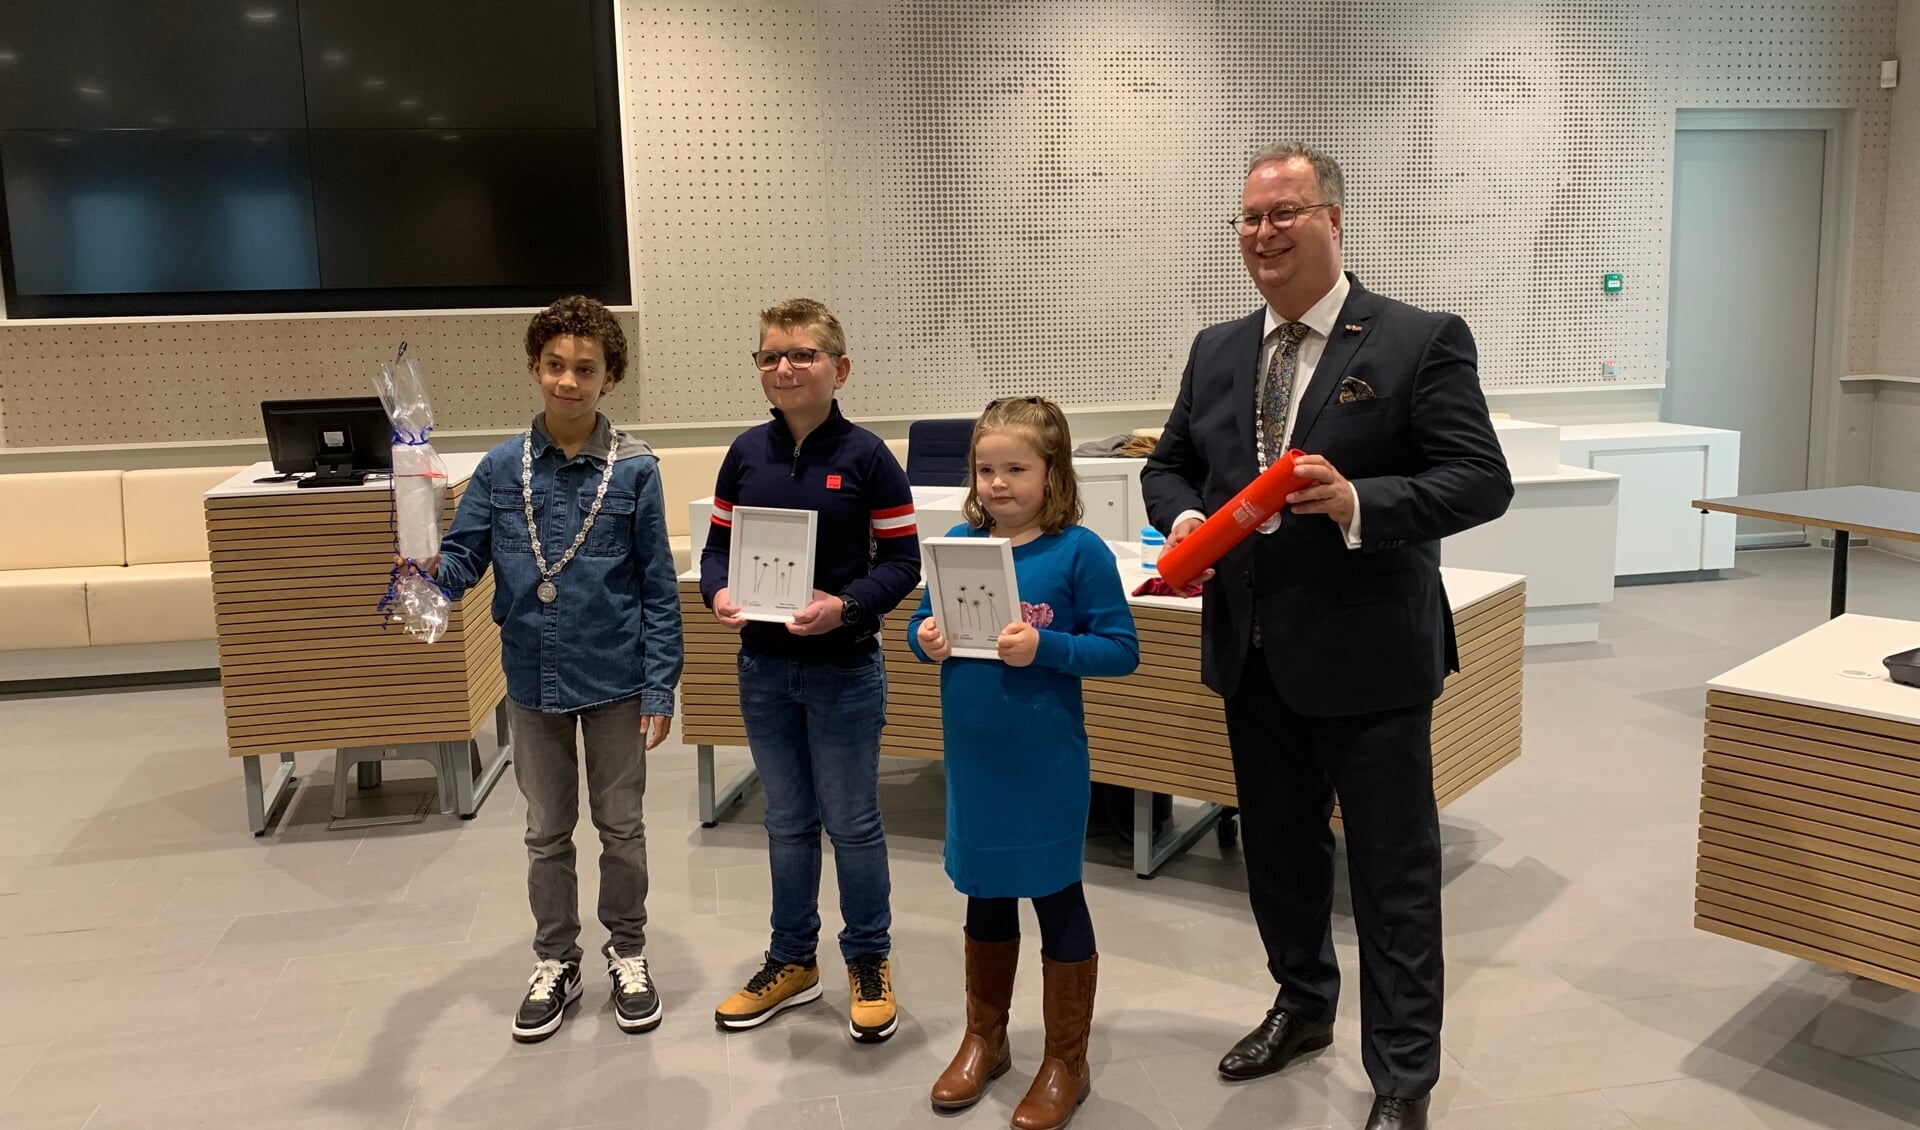 De awardwinnaars tussen de twee burgemeesters in de Nieuwerkerkse raadzaal.